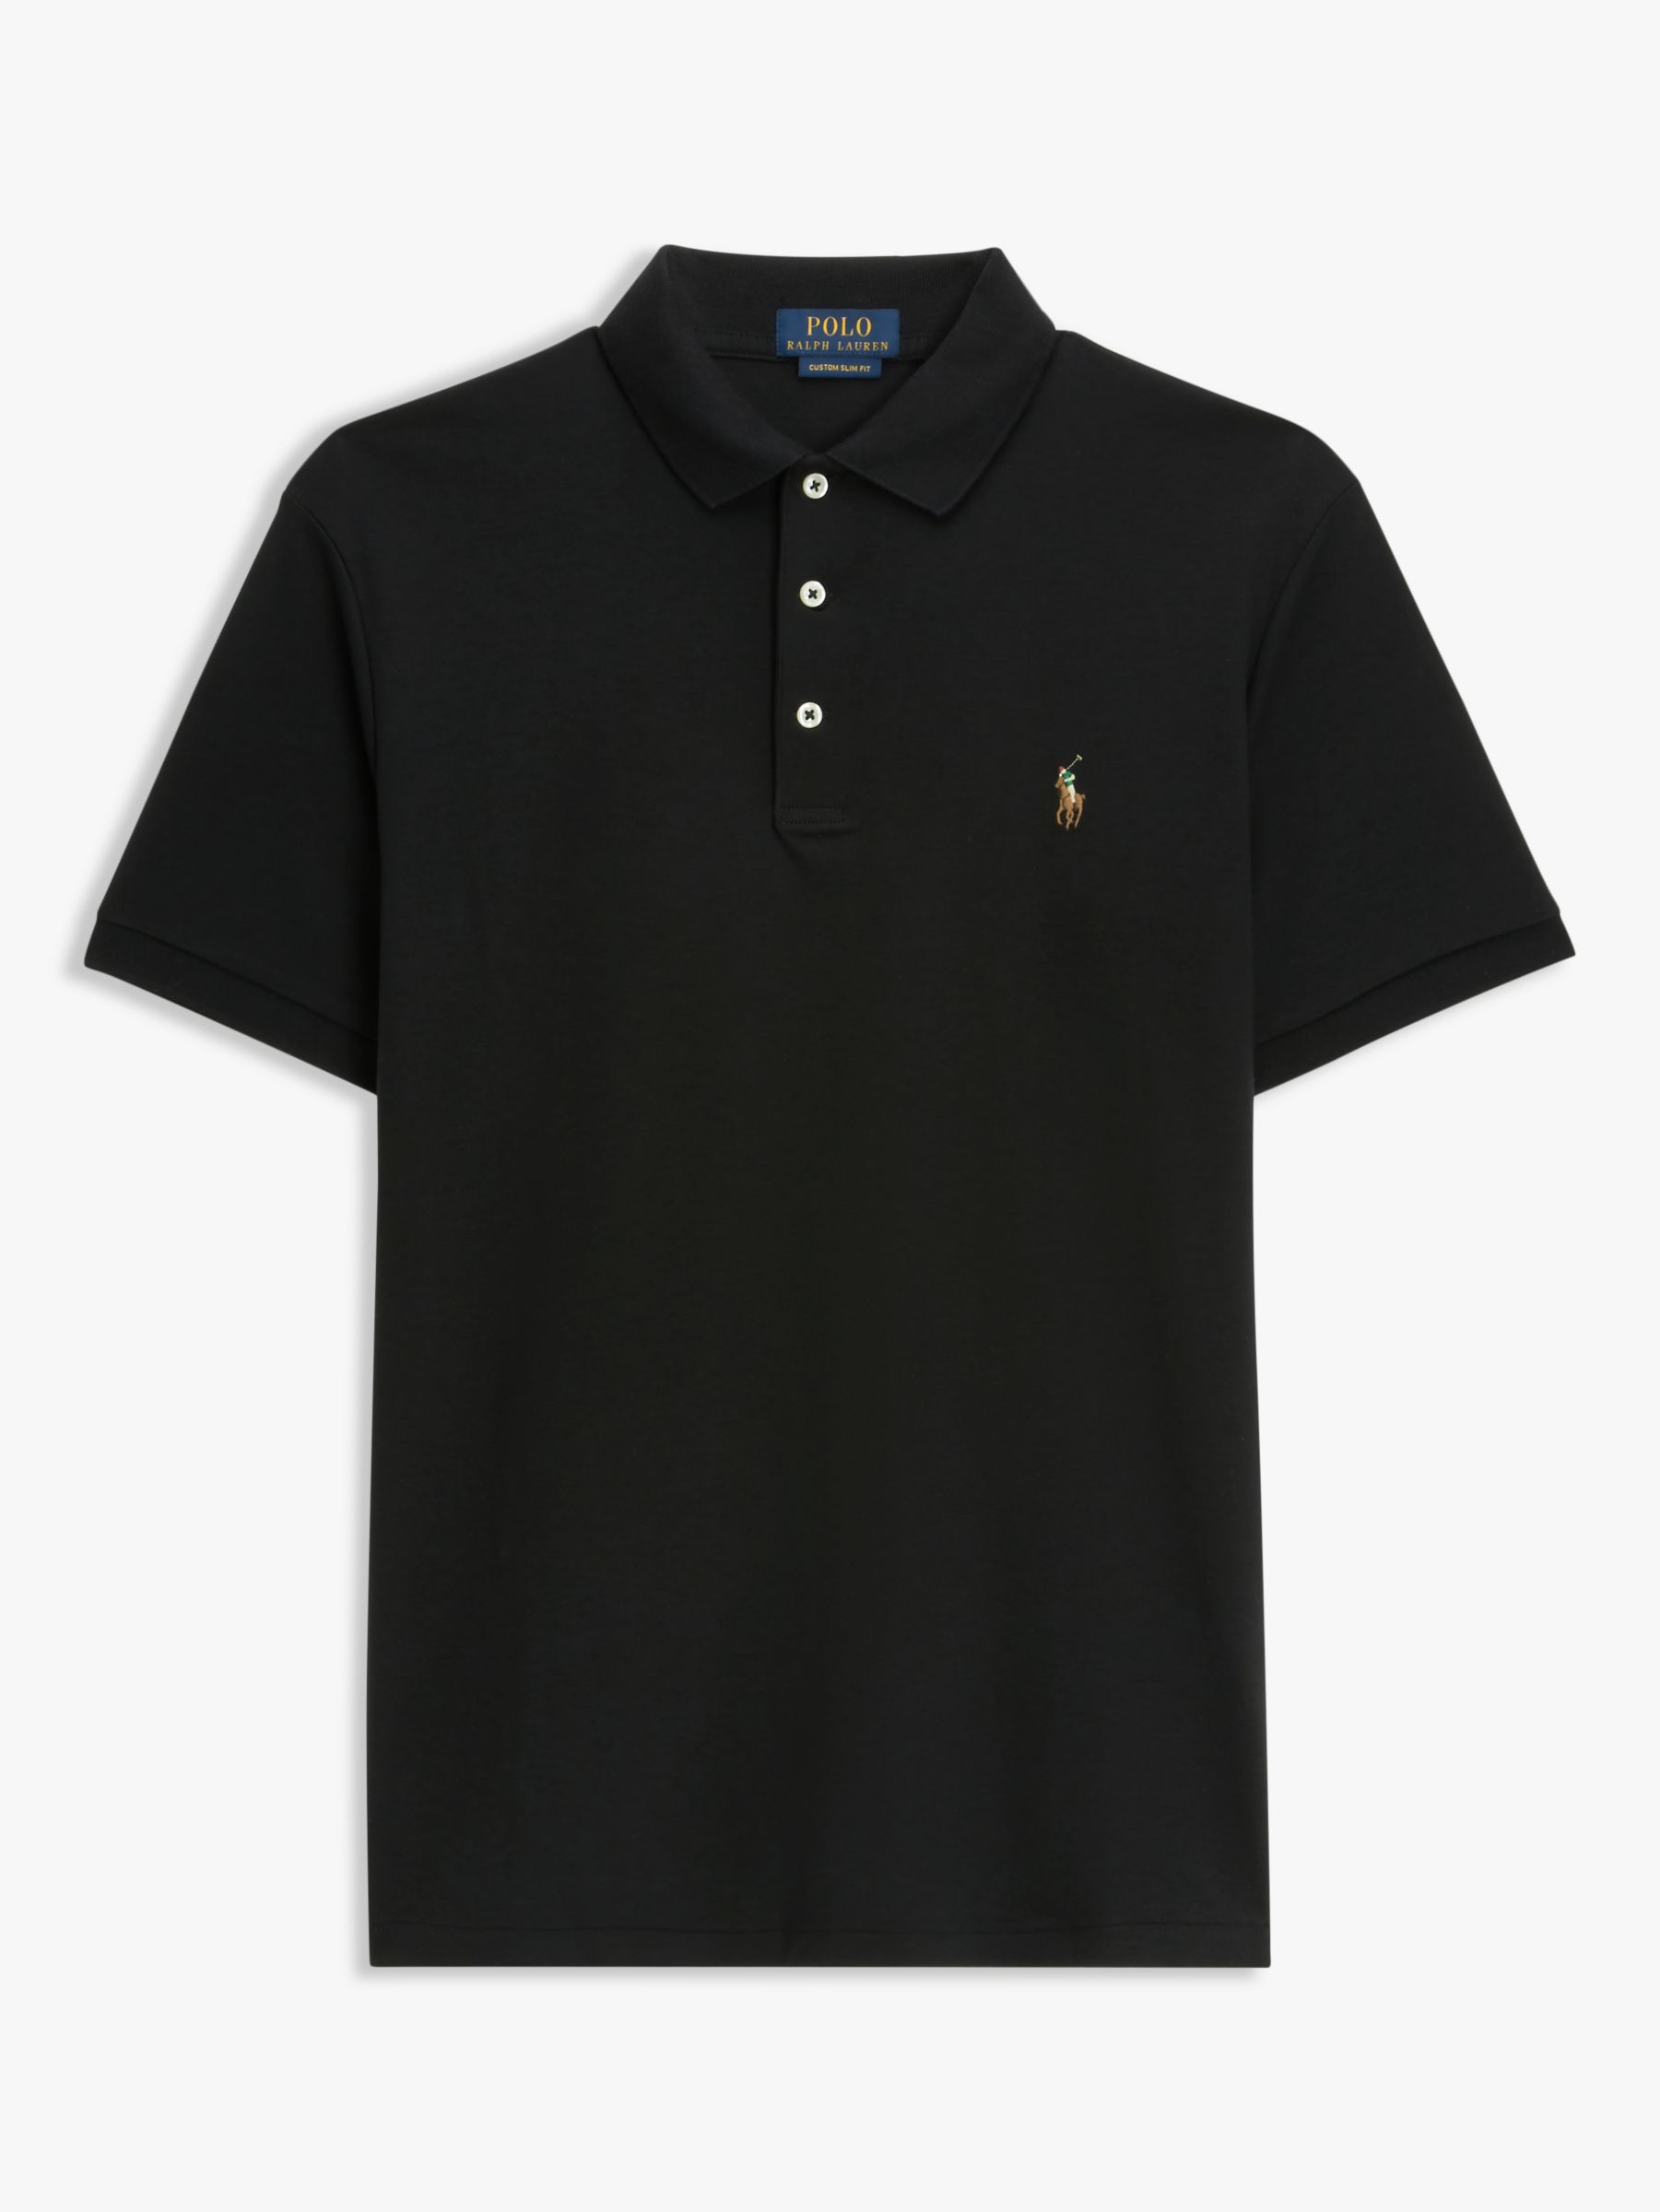 Polo Ralph Lauren Short Sleeve Polo Shirt, Polo Black, XL